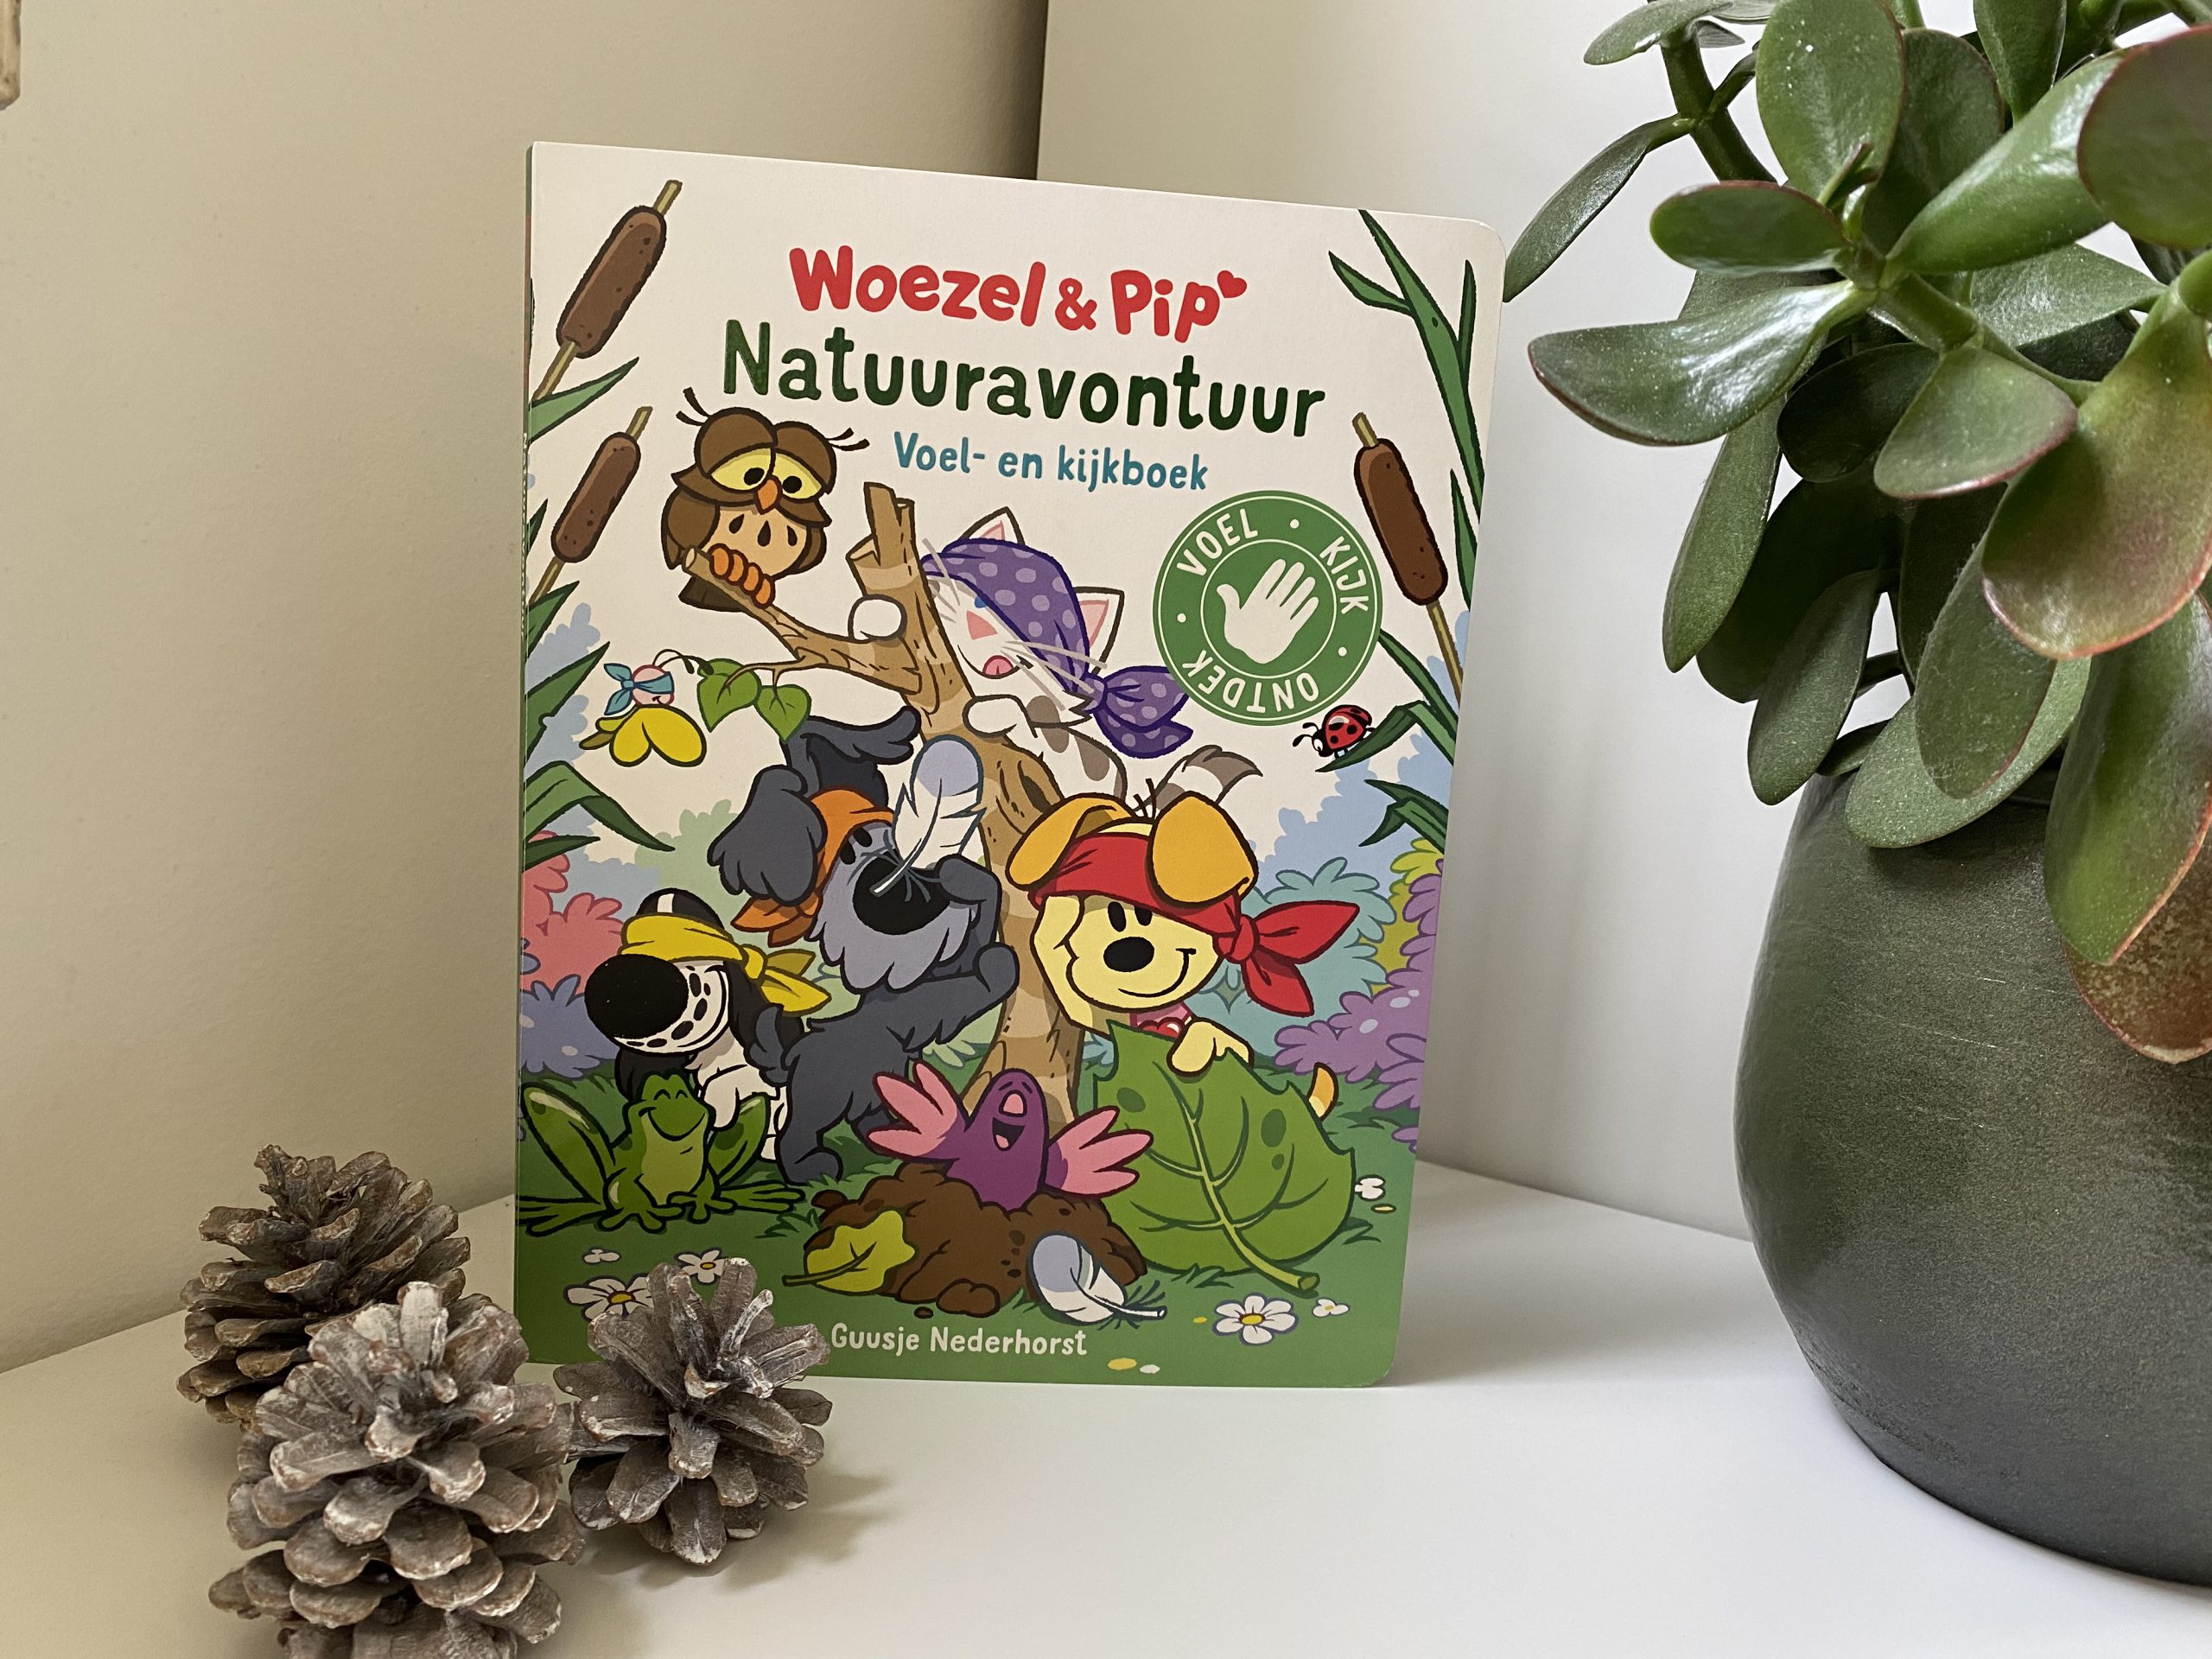 Woezel & Pip – Natuuravontuur. Een leuk en leerzaam voel- en kijkboek